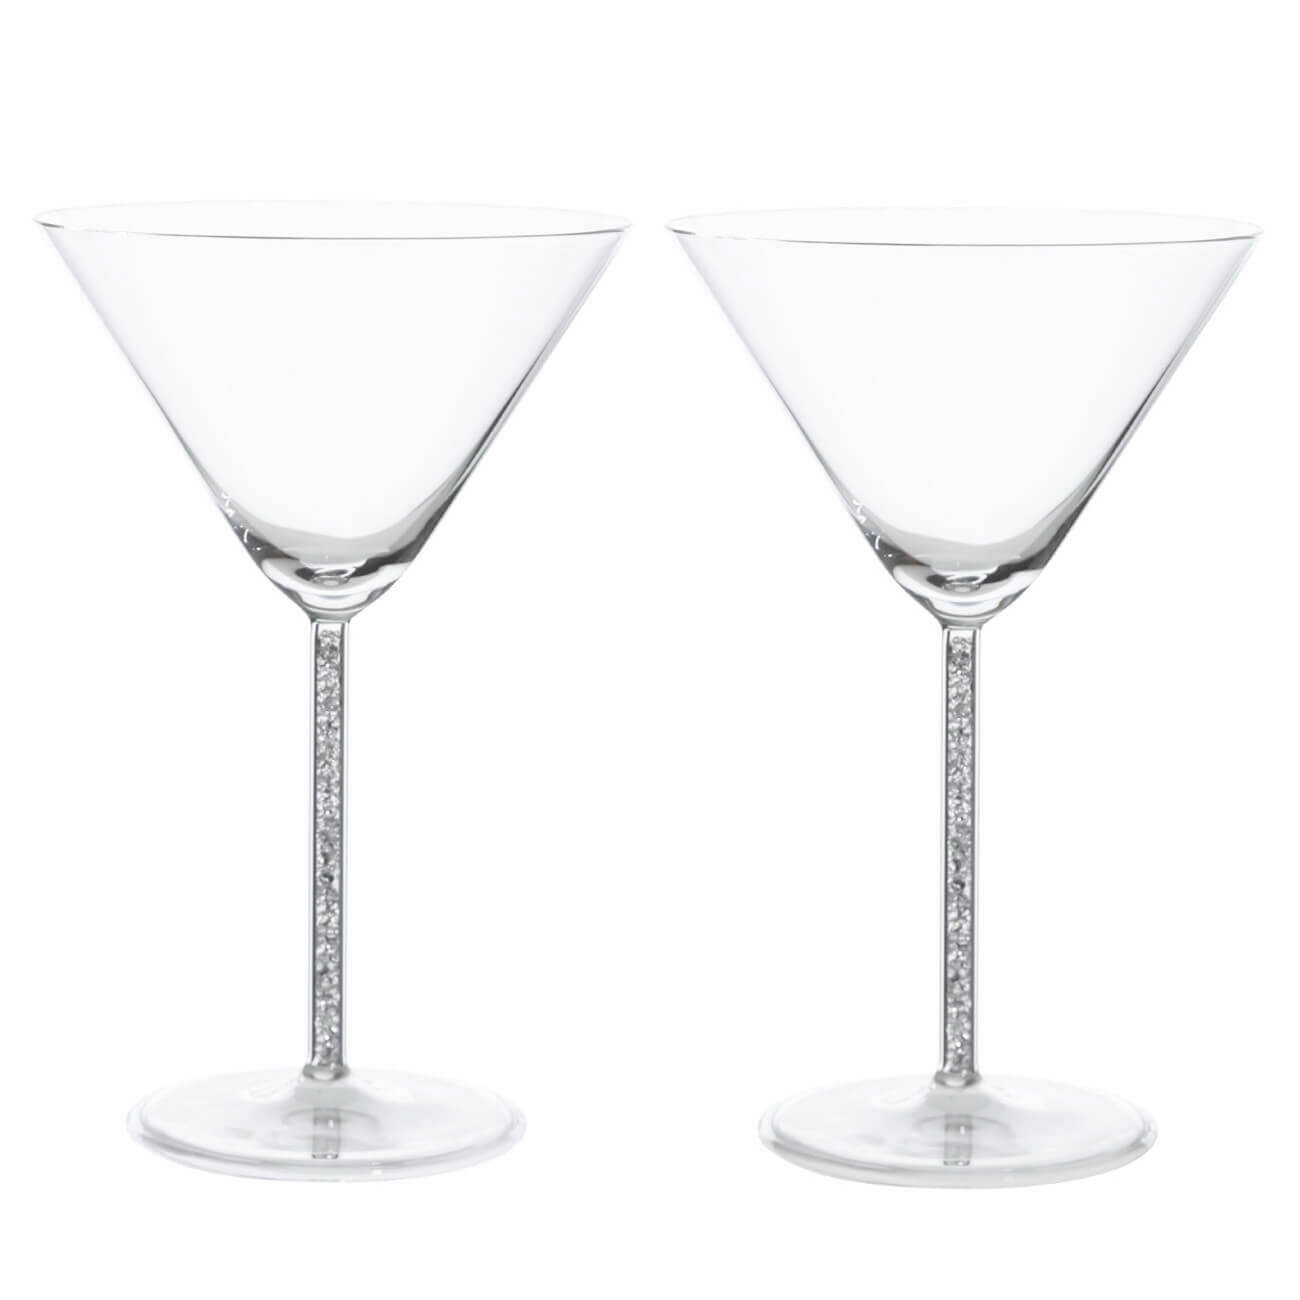 Бокал для мартини, 270 мл, 2 шт, стекло/стразы, Crystal decor стразы жемчужные для декора на клеевой основе 3 мм разно ные